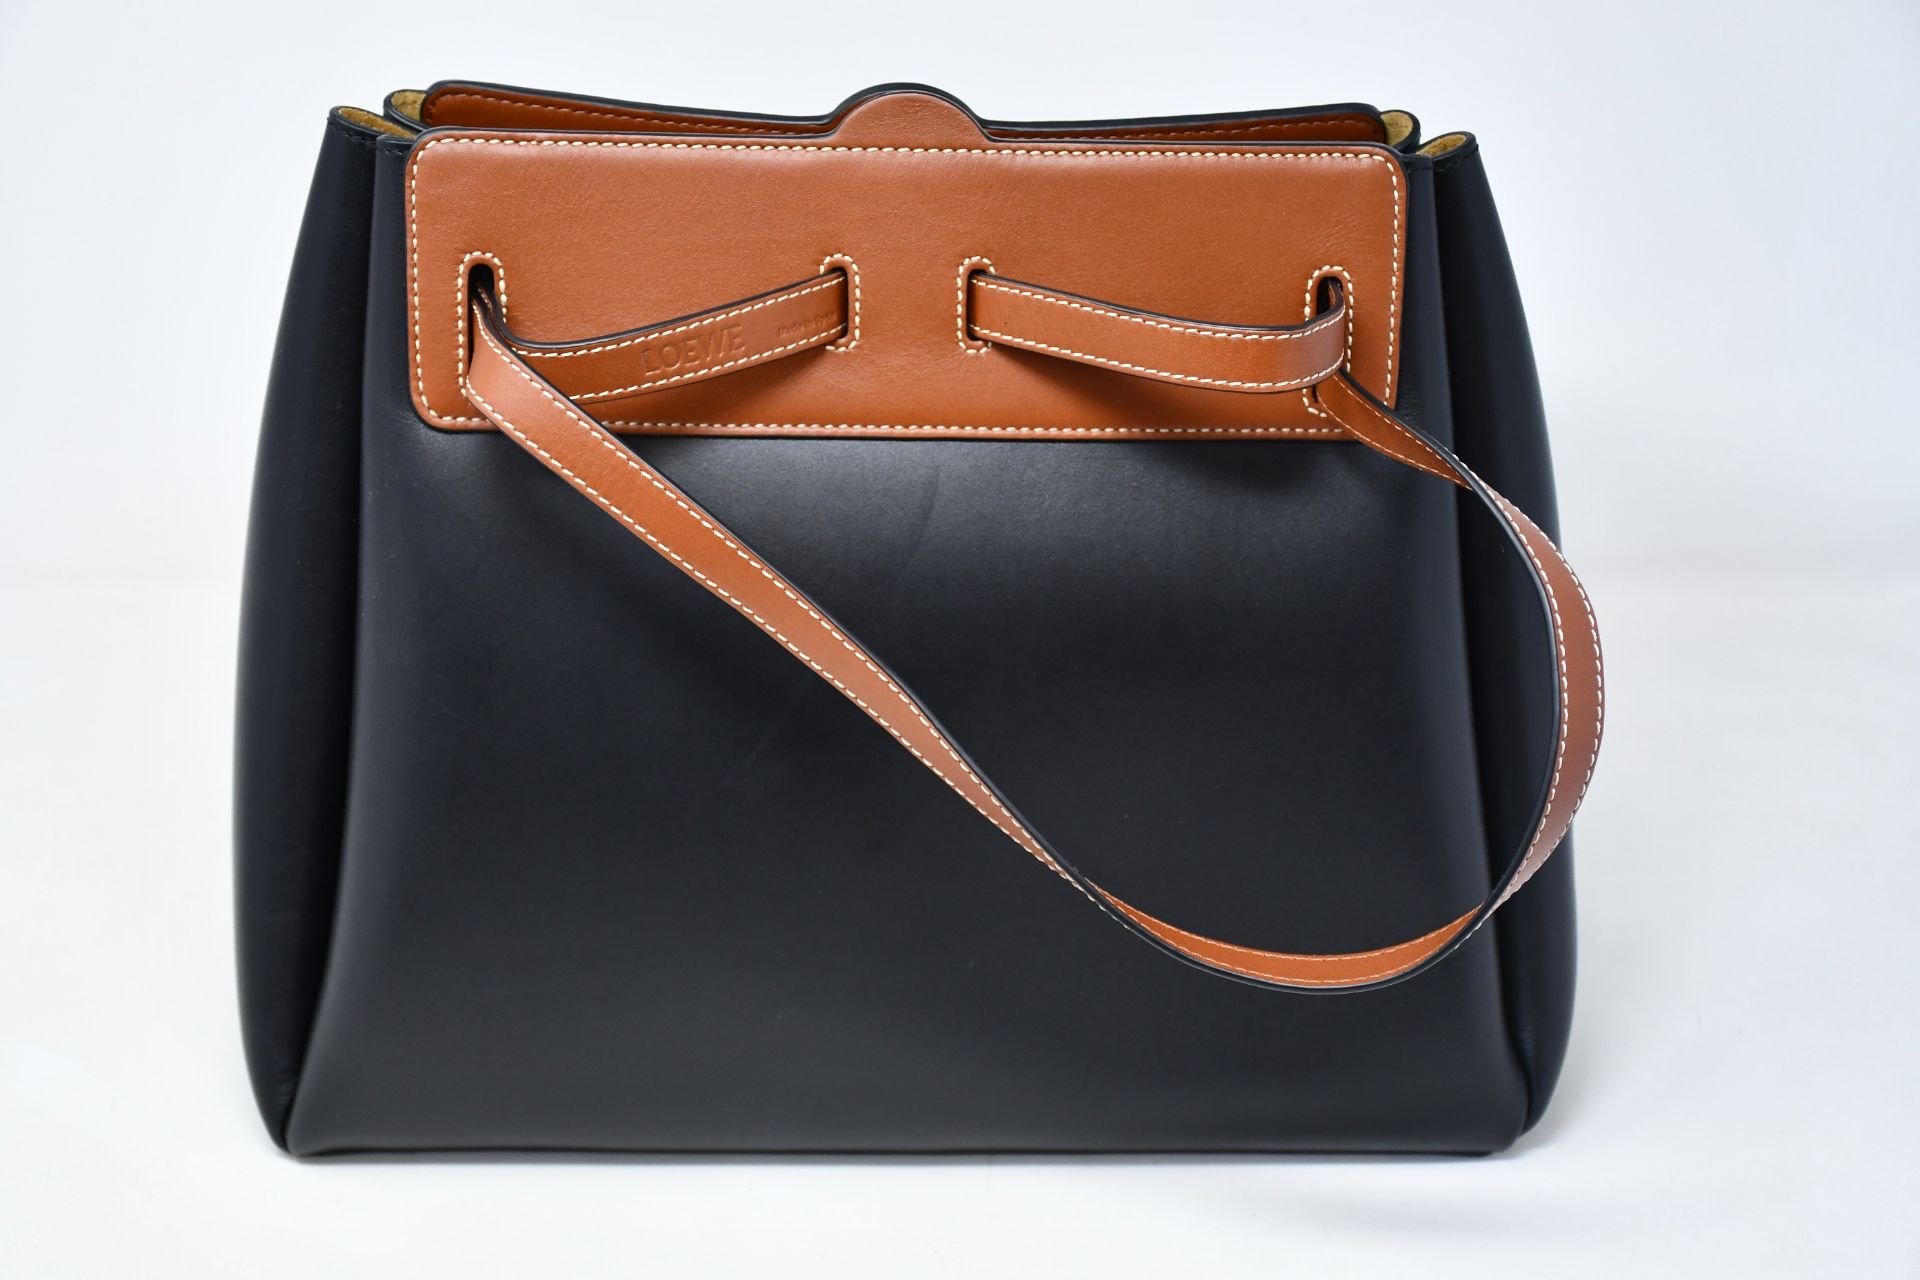 An as new Loewe Lazo shopper bag in black (RRP £1750).